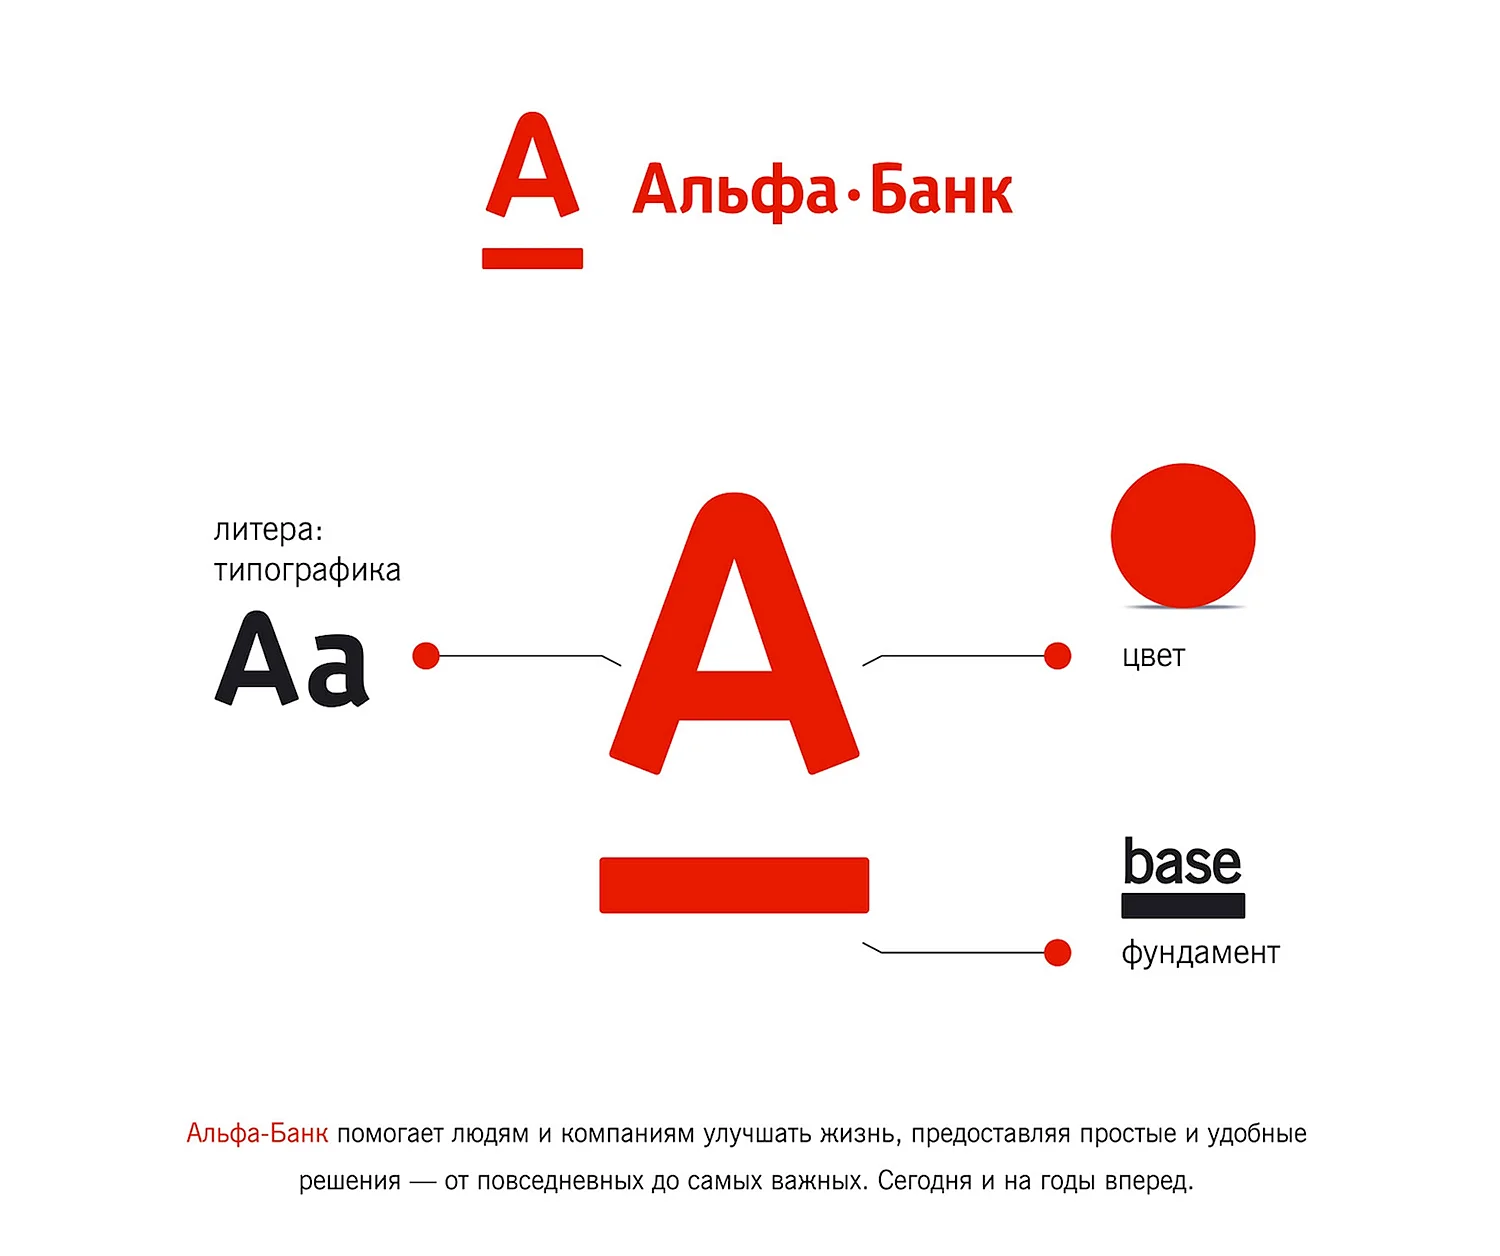 Первый логотип Альфа банка